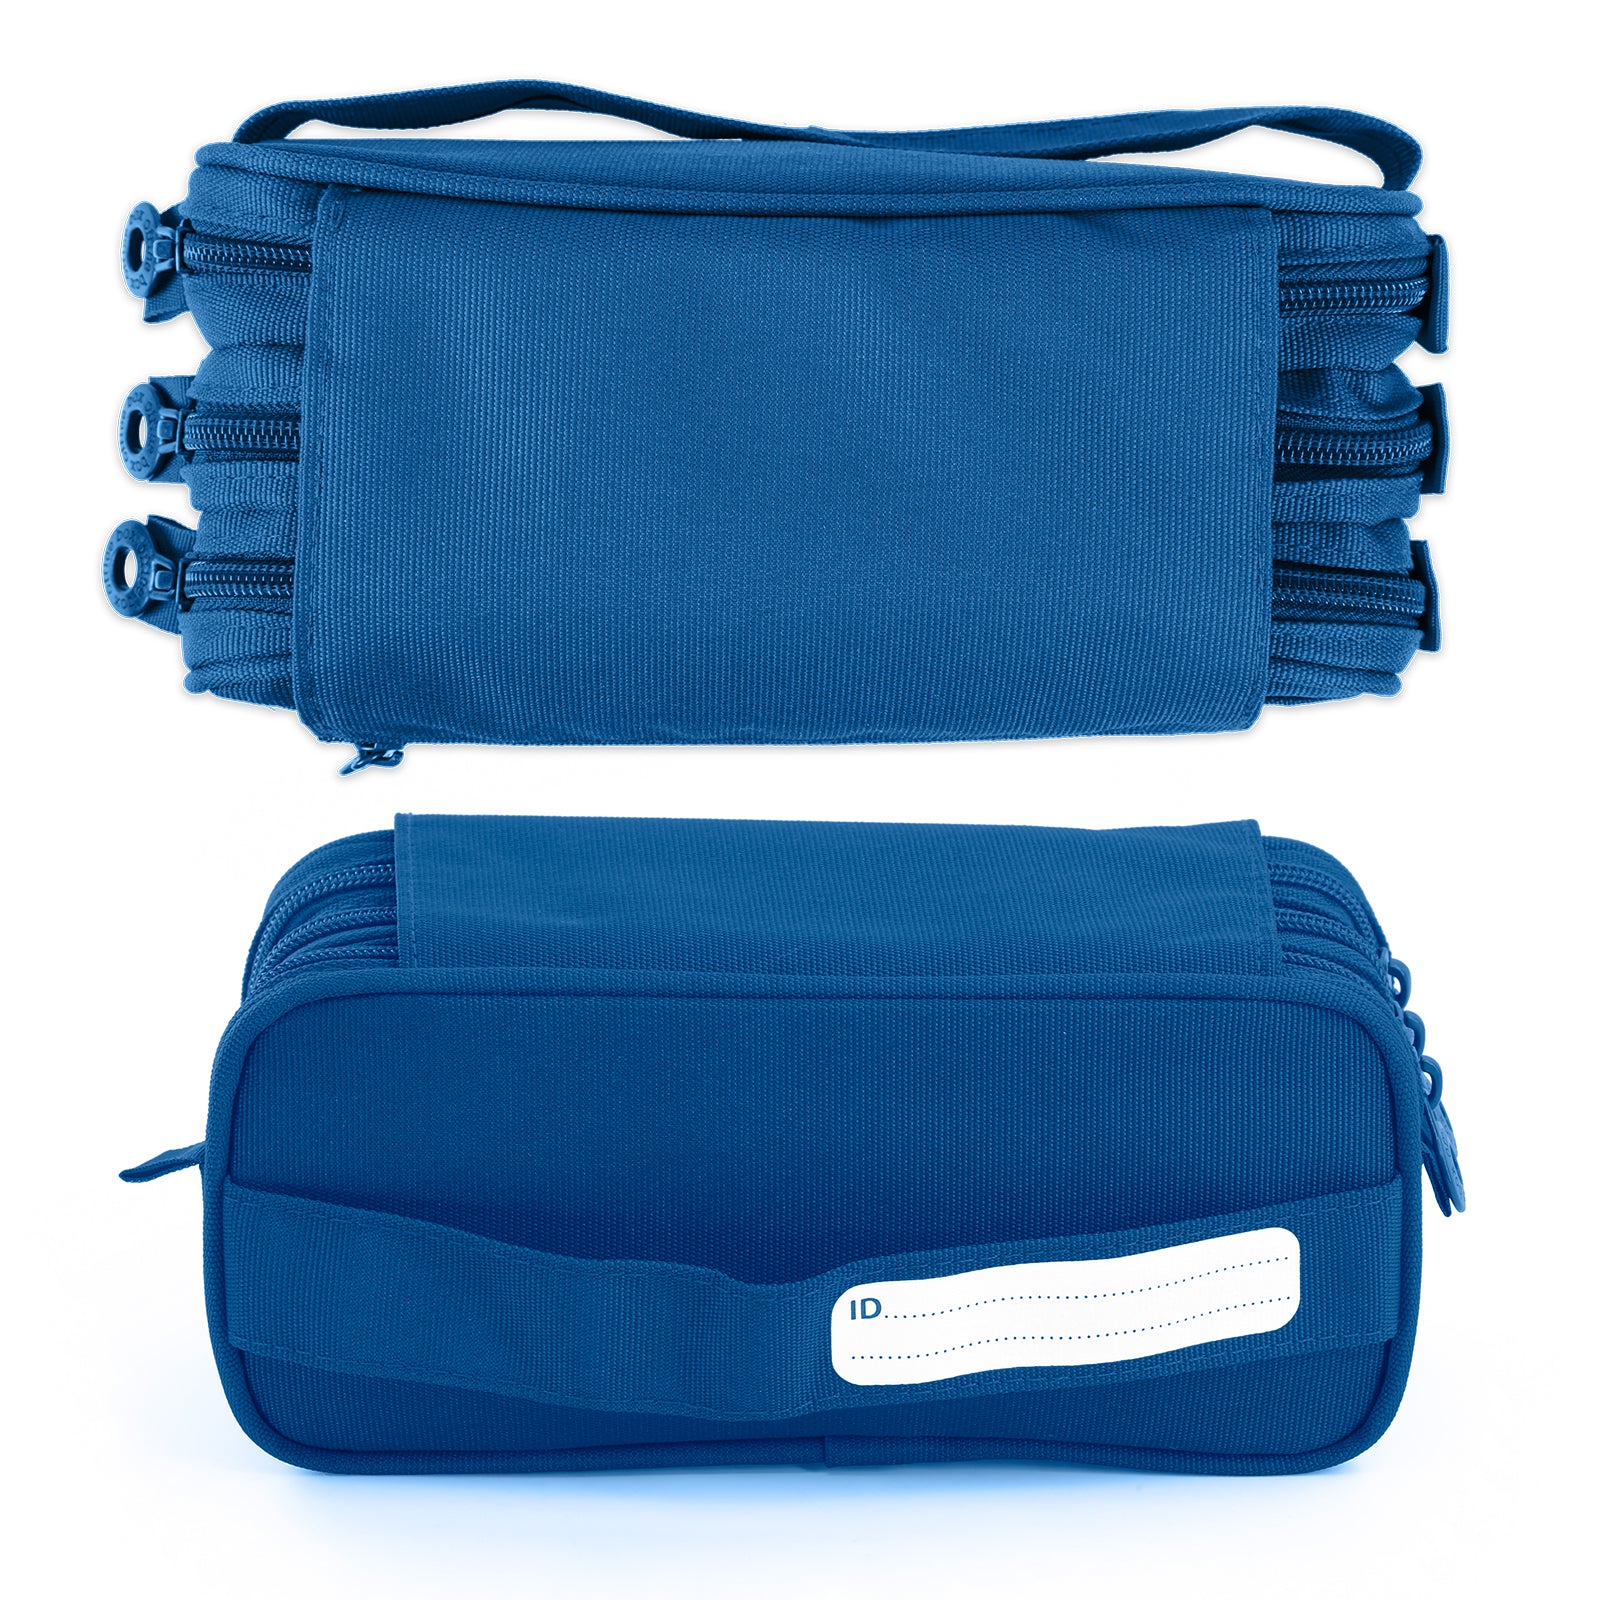 ColePack Pro - Estuche Triple de 3 Cremalleras con Material Escolar Incluido. Azul Oscuro